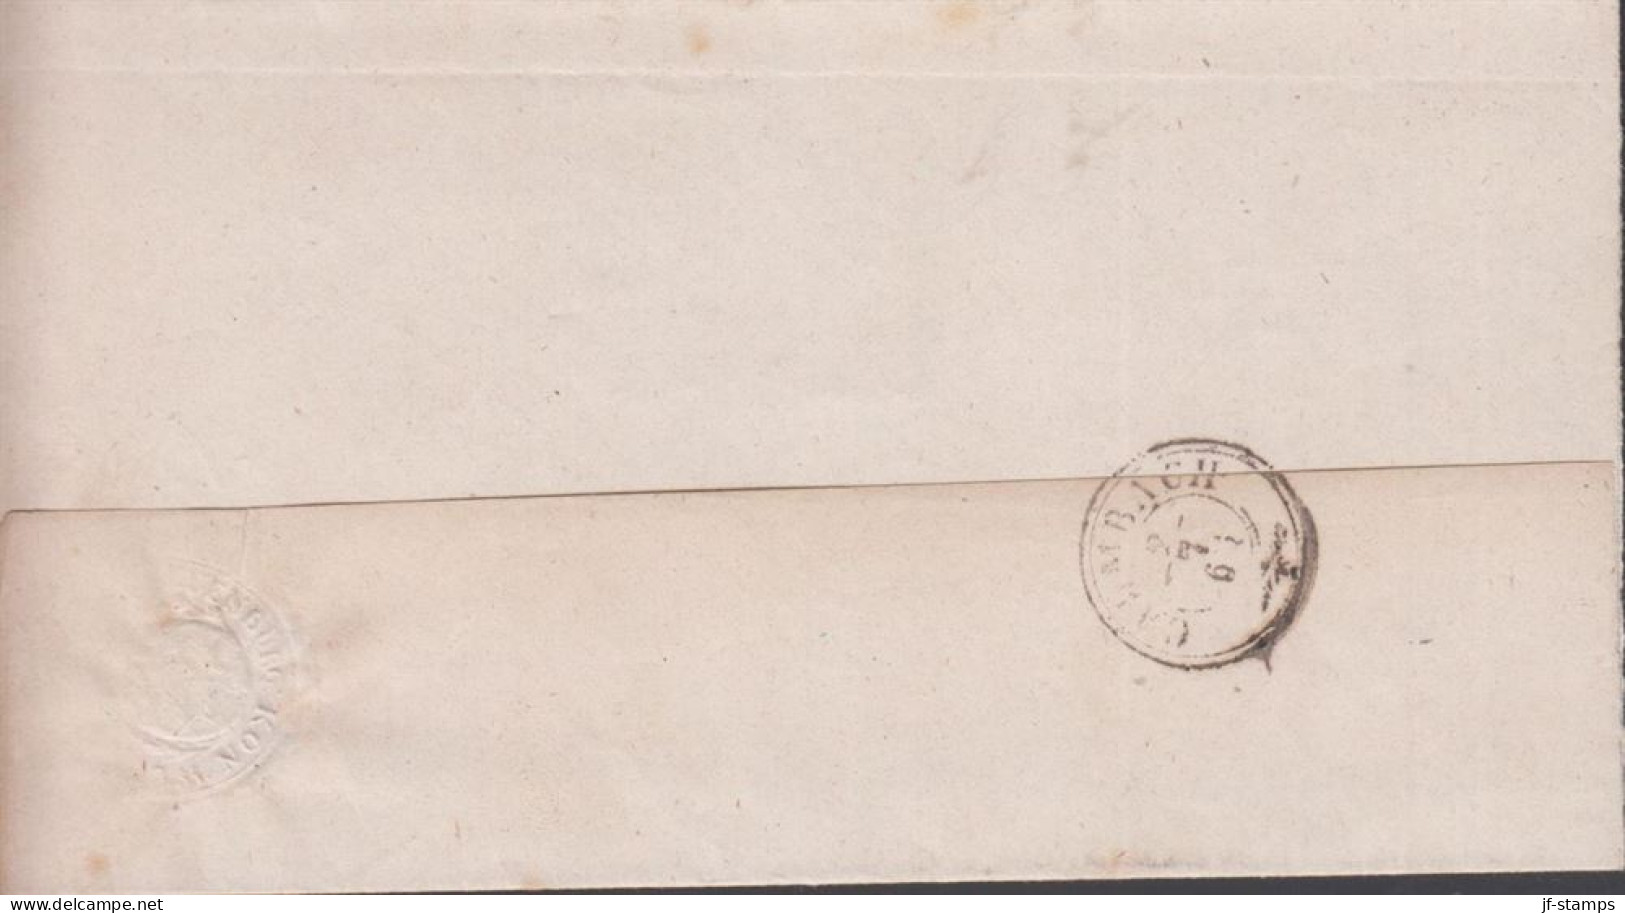 1863. DEUTSCHLAND. Very Interesting And Beautiful Cover Cancelled NEUENBURG 2 JUL 1863. Sender Cancel In G... - JF436619 - Vorphilatelie